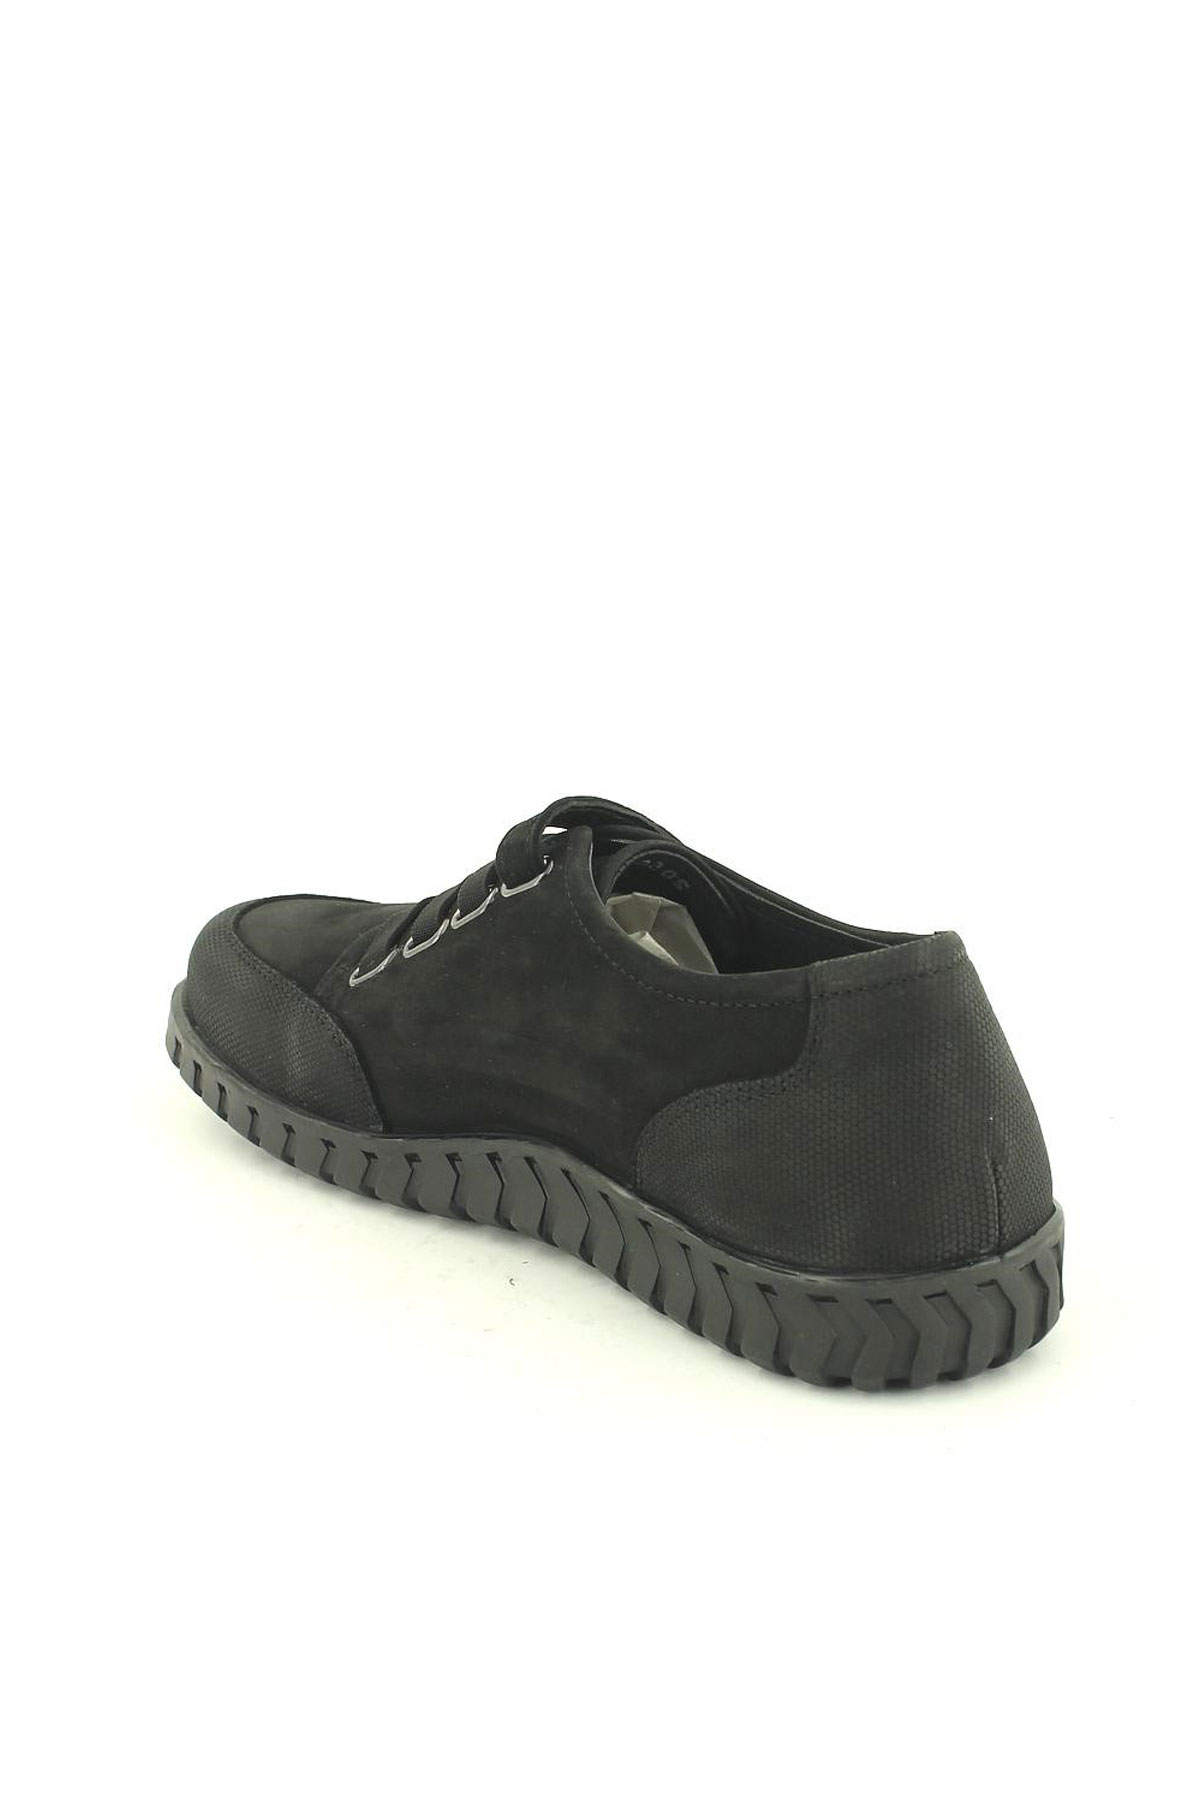 Kadın Comfort Deri Ayakkabı Siyah 2050804K